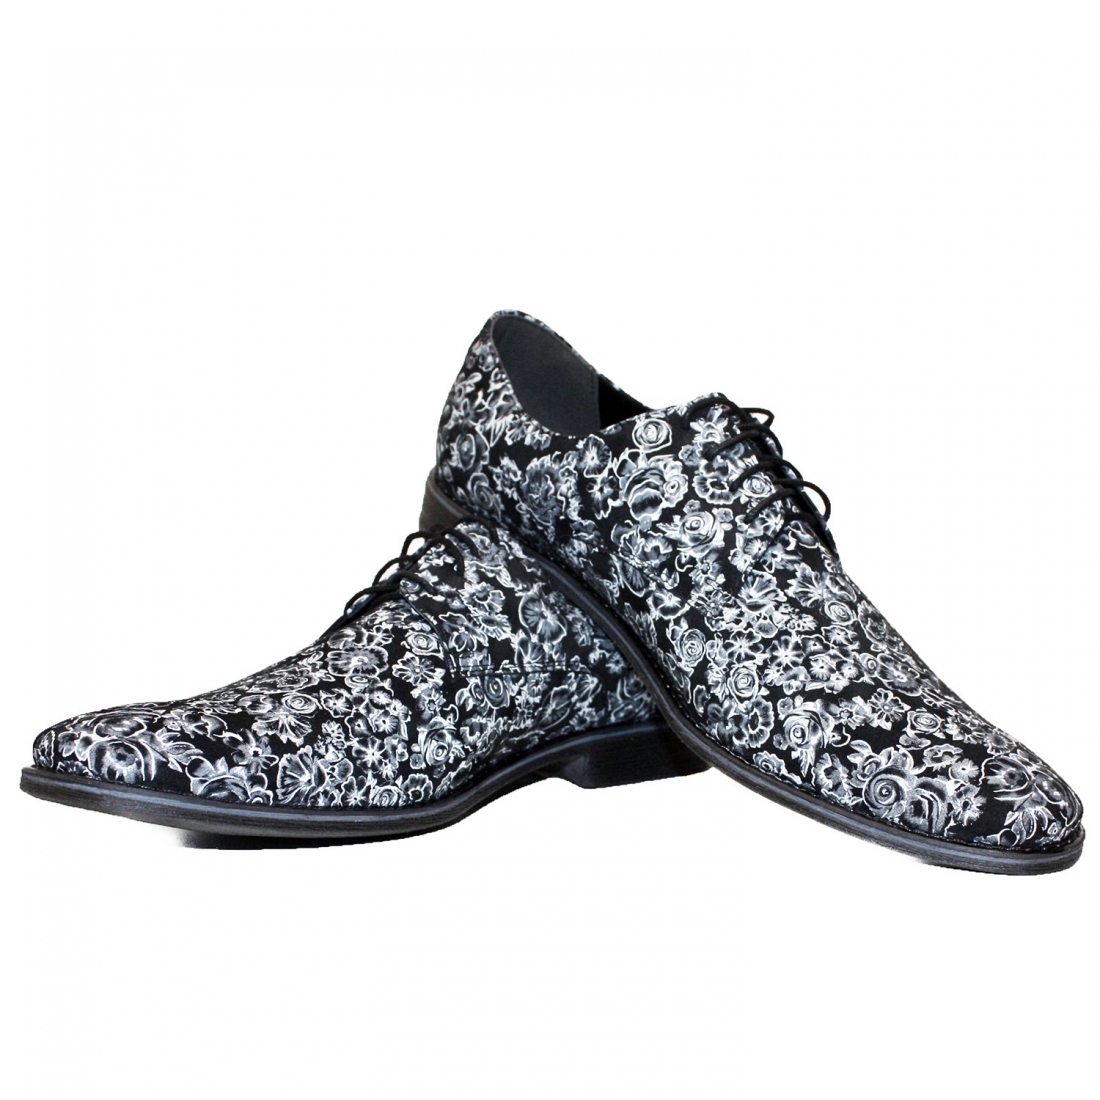 Modello Reteros - Scarpe Classiche - Handmade Colorful Italian Leather Shoes